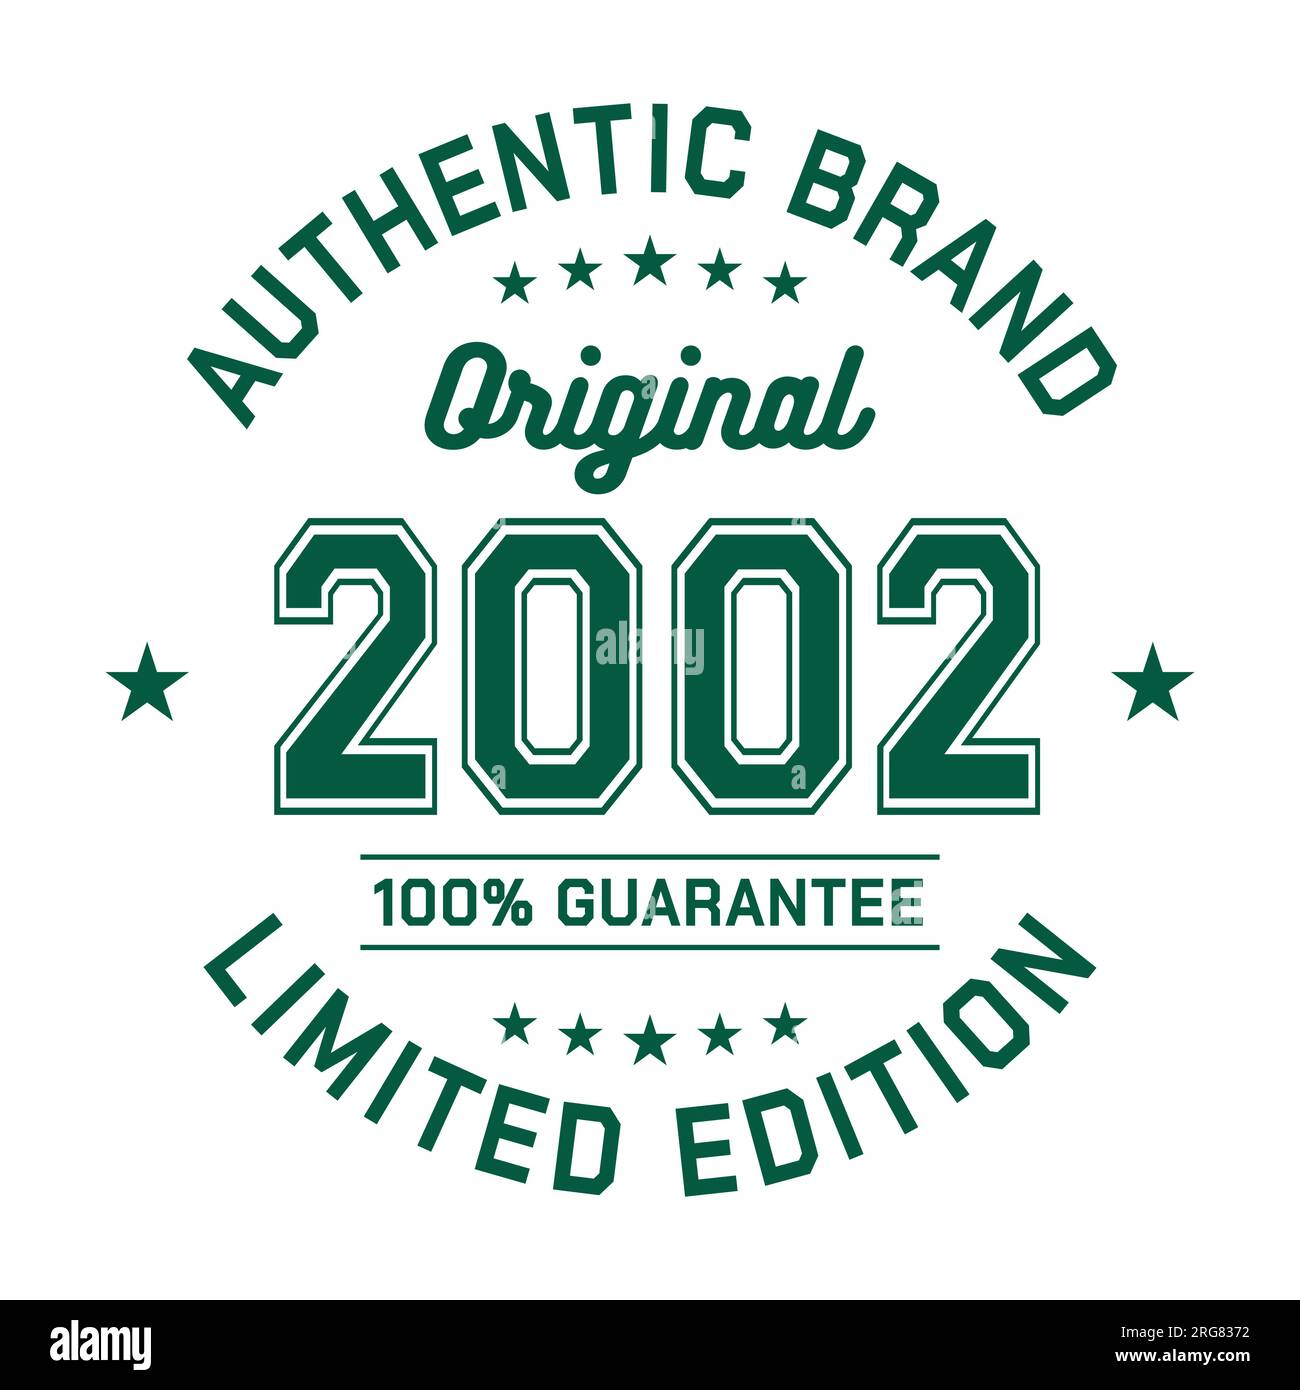 2002 marque authentique. Design de mode vestimentaire. Design graphique pour t-shirt. Vecteur et illustration. Illustration de Vecteur